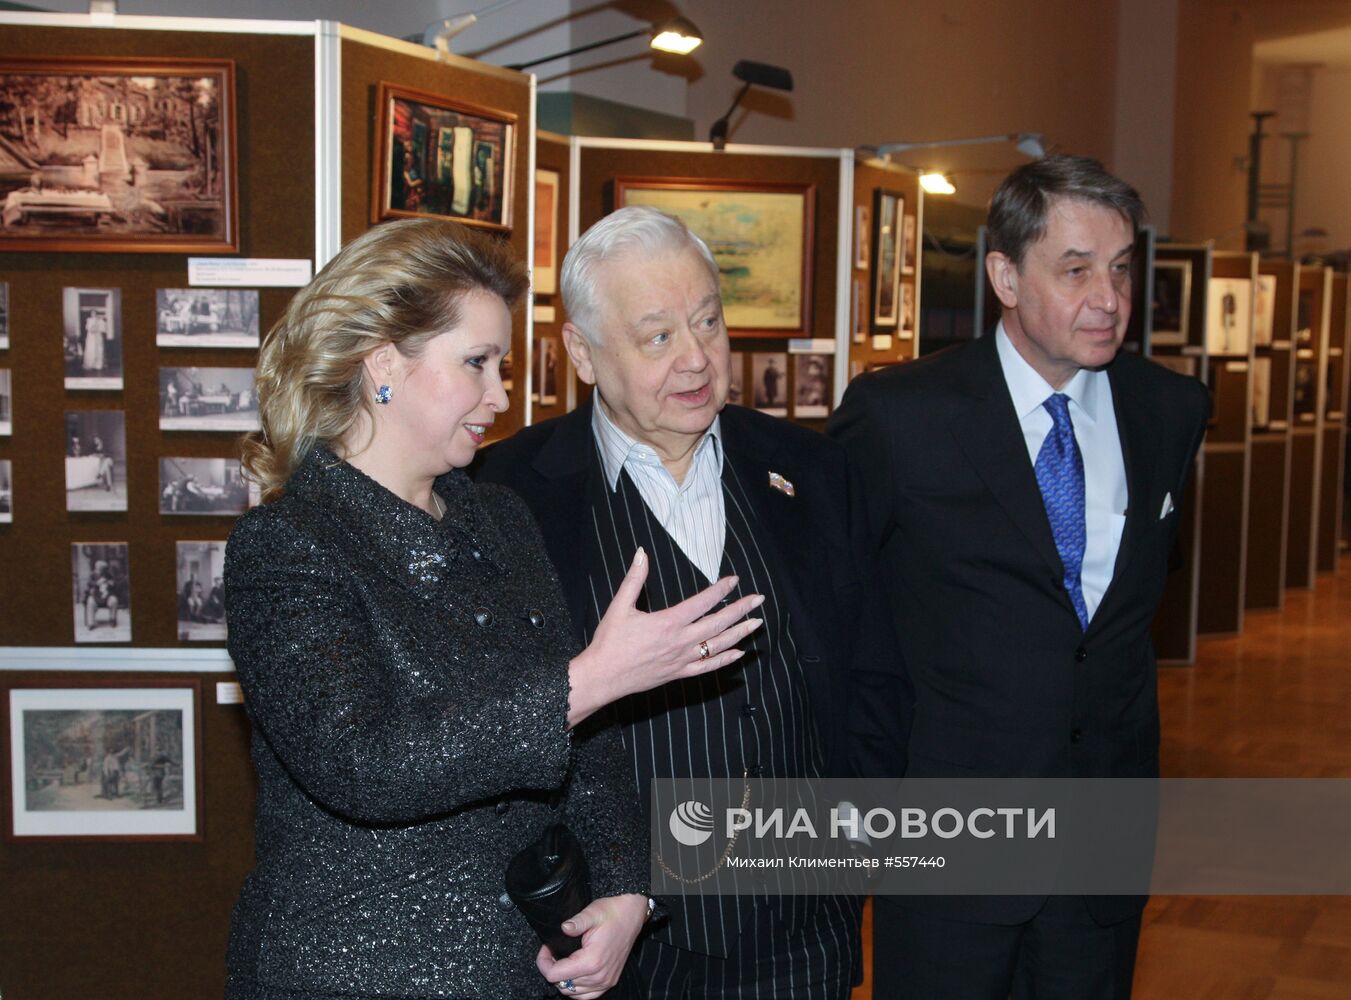 Светлана Медведева посетила юбилейный вечер "Наш Чехов"